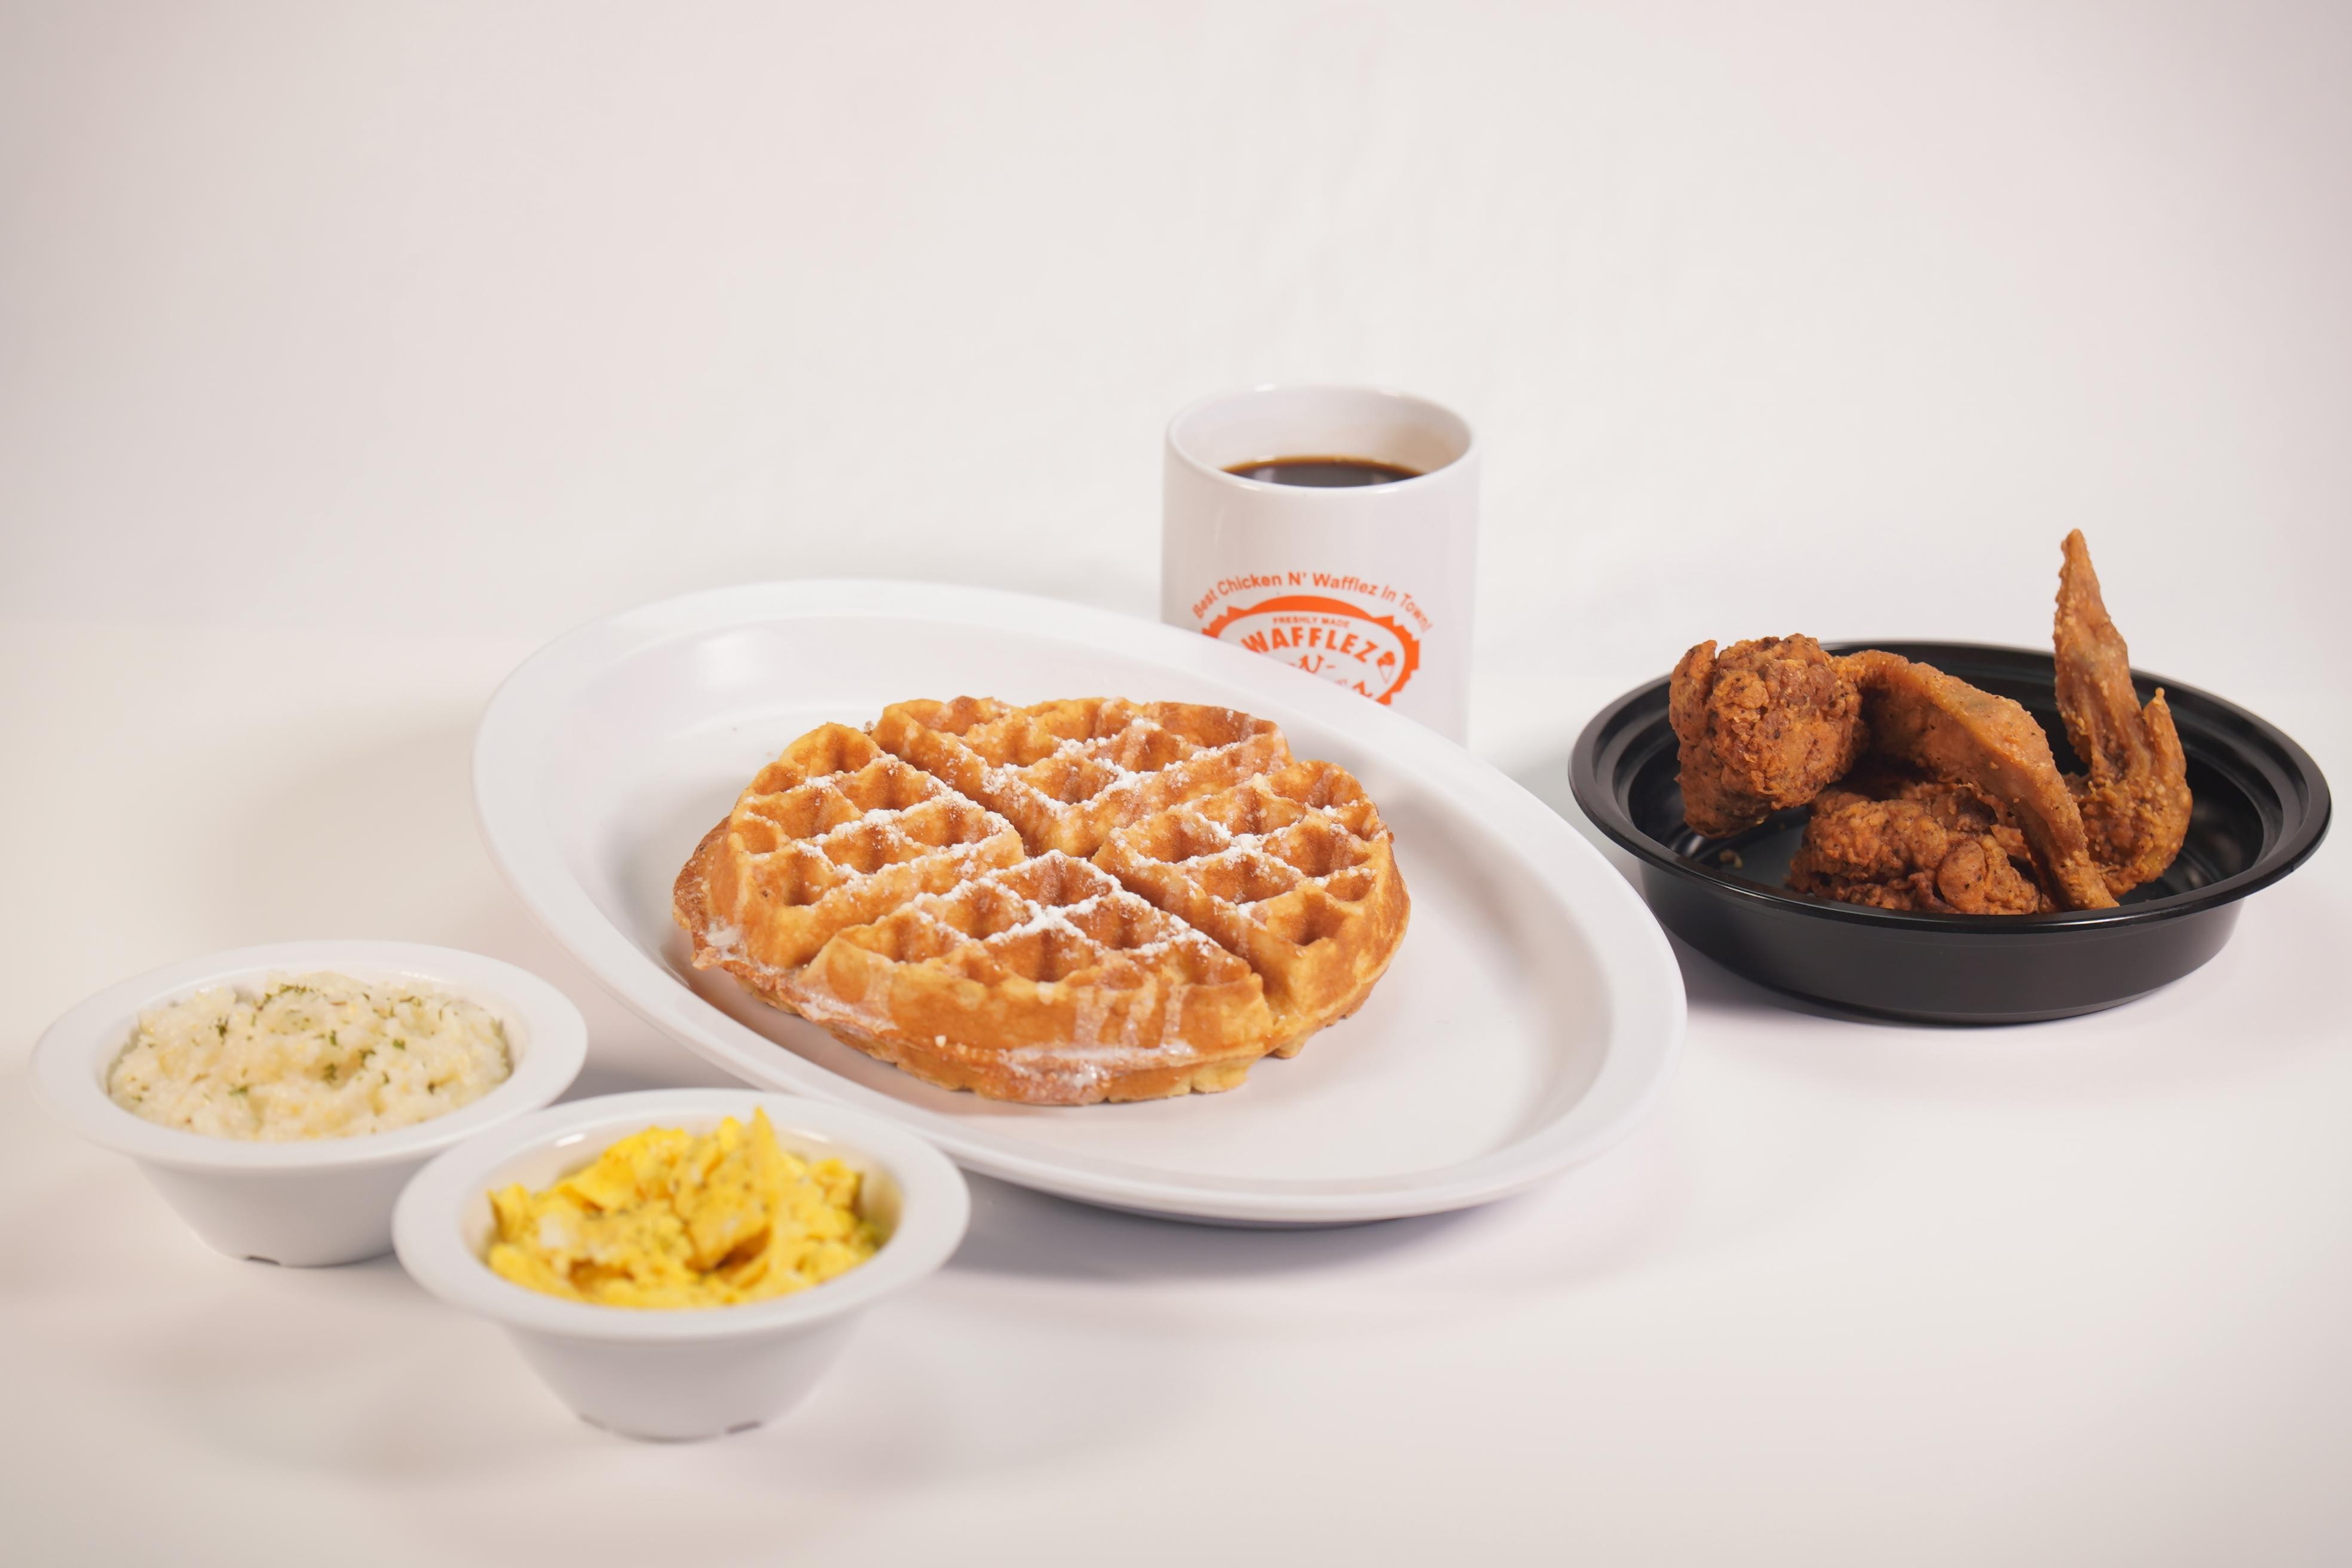 Full Waffle Breakfast W/ 2 Wings